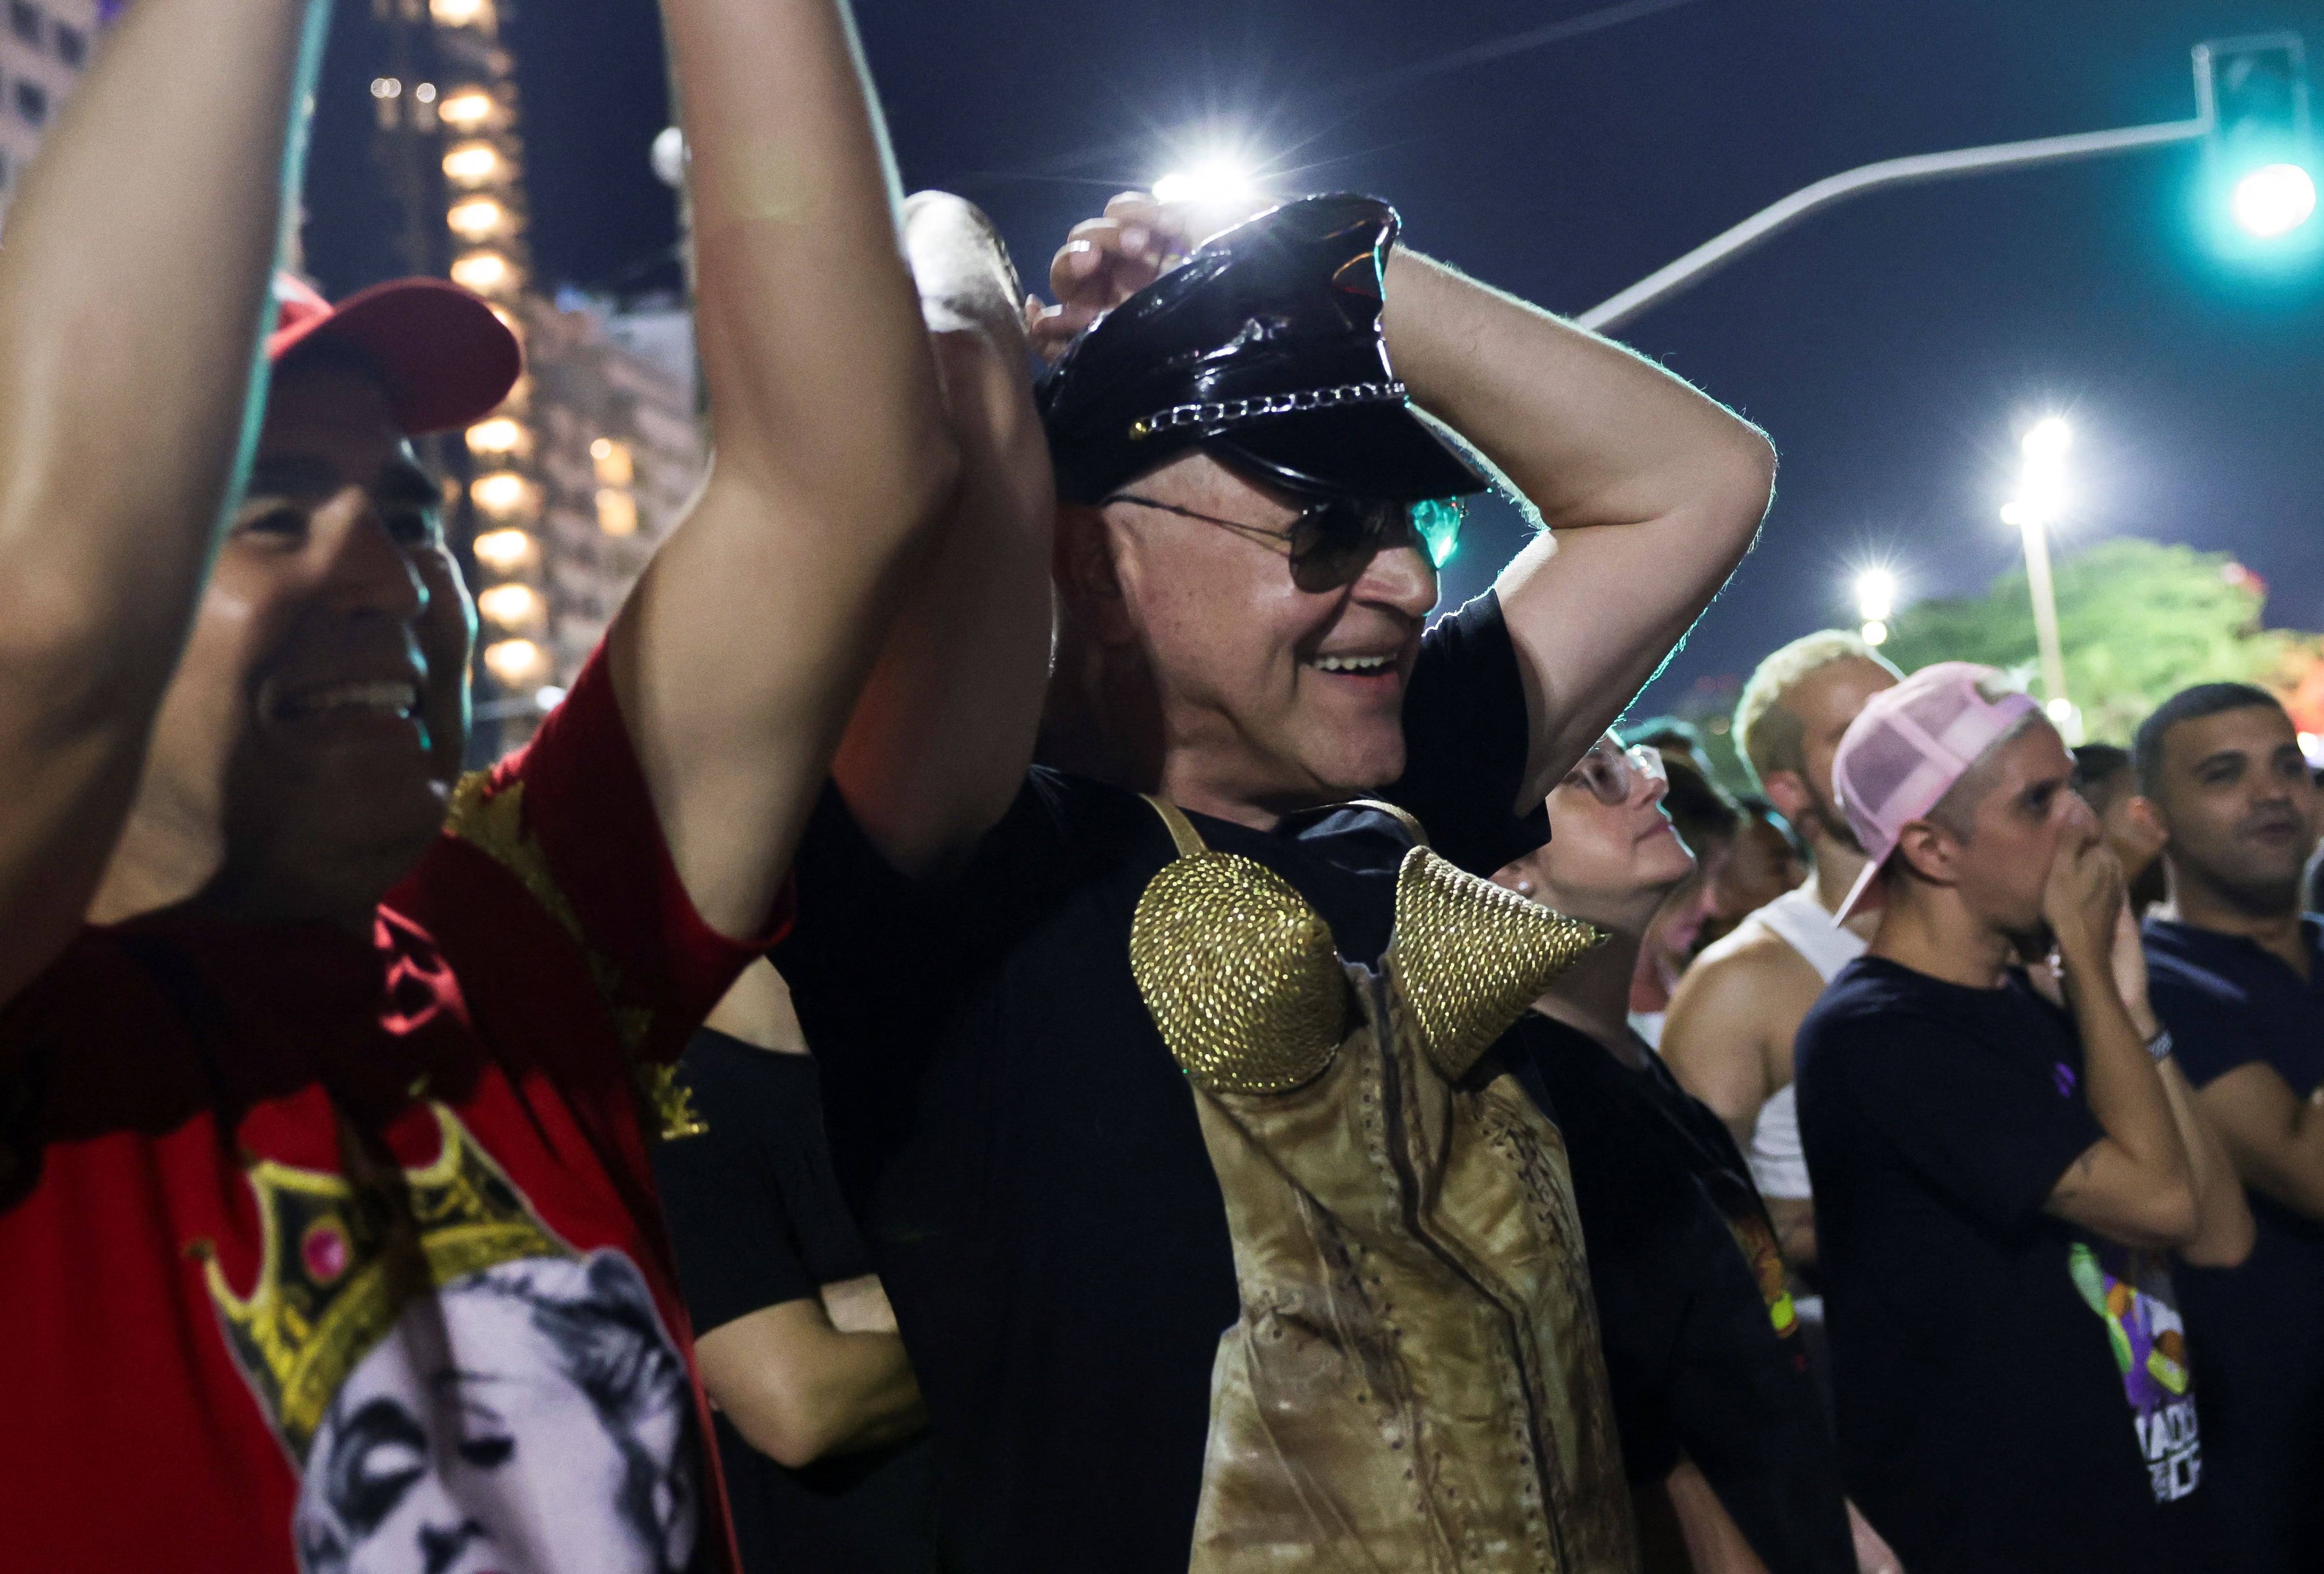 Lookeados como la artista, con gorra de cuero y corset, los fans de Madonna esperan su gran show en Río (Foto/REUTERS/Ricardo Moraes)